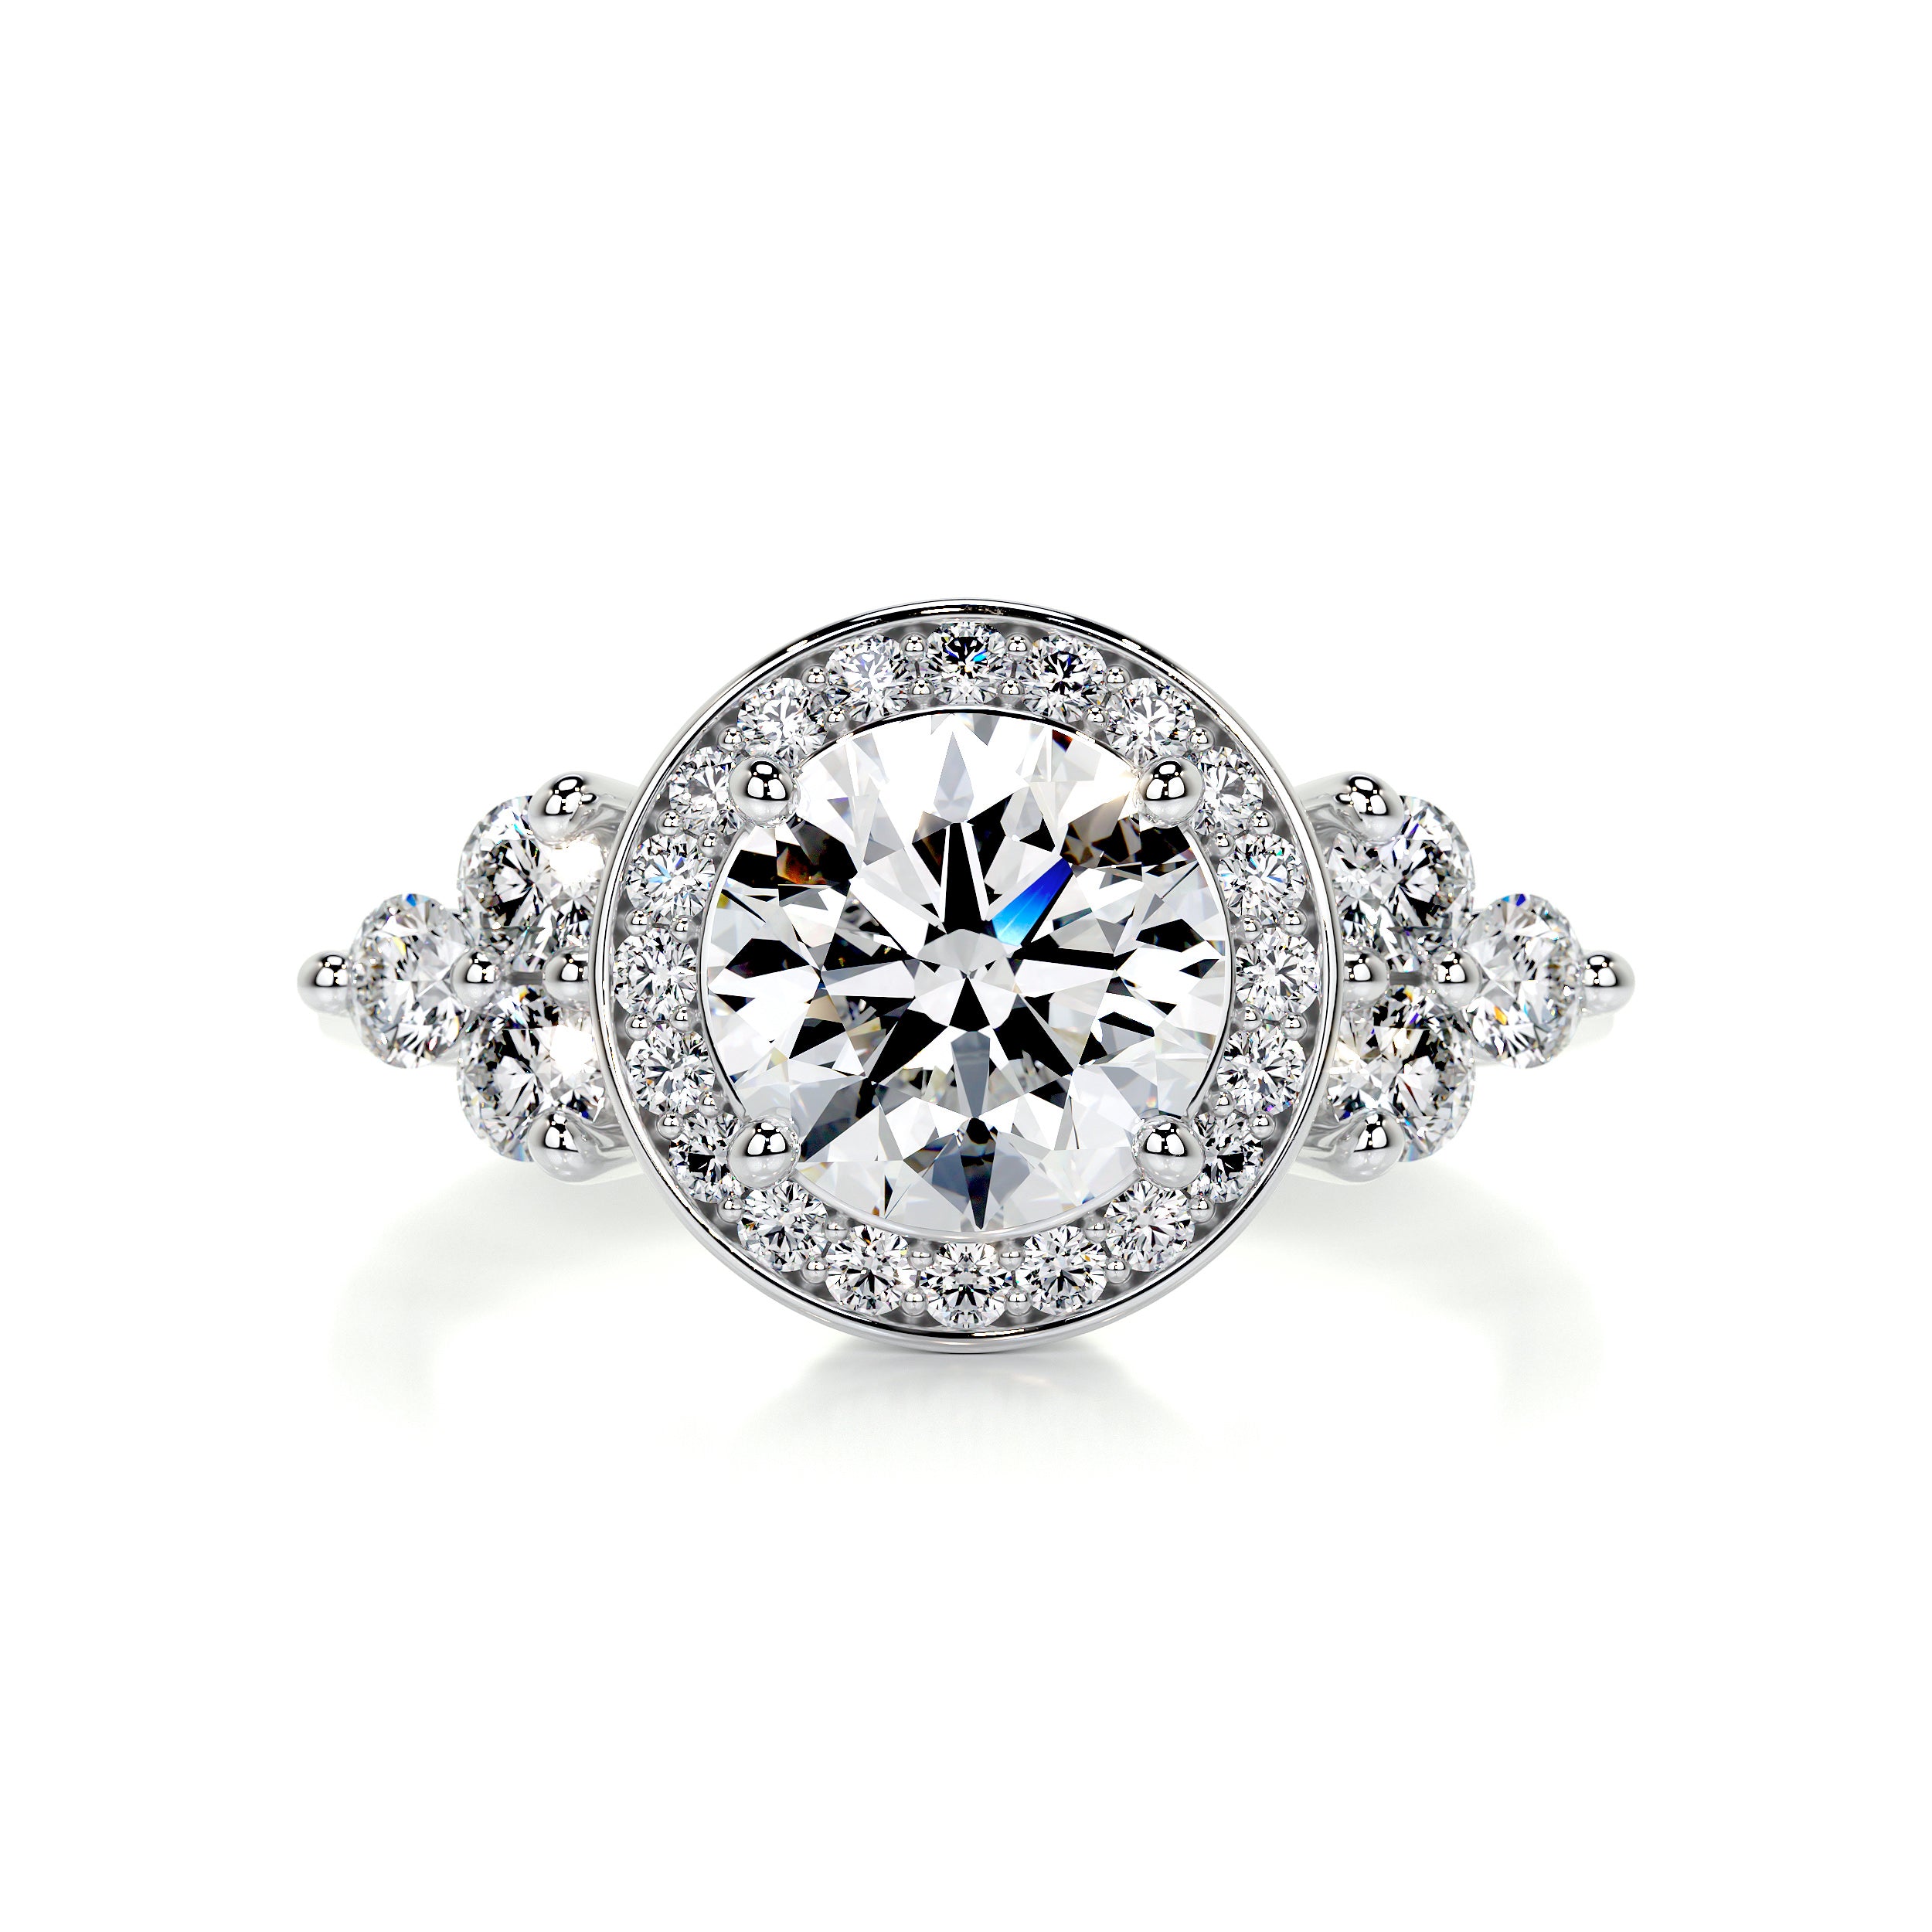 Edwardian Era 1910's Antique Diamond Engagement Ring Platinum | Antique  diamond engagement rings, Engagement rings platinum, Wedding rings